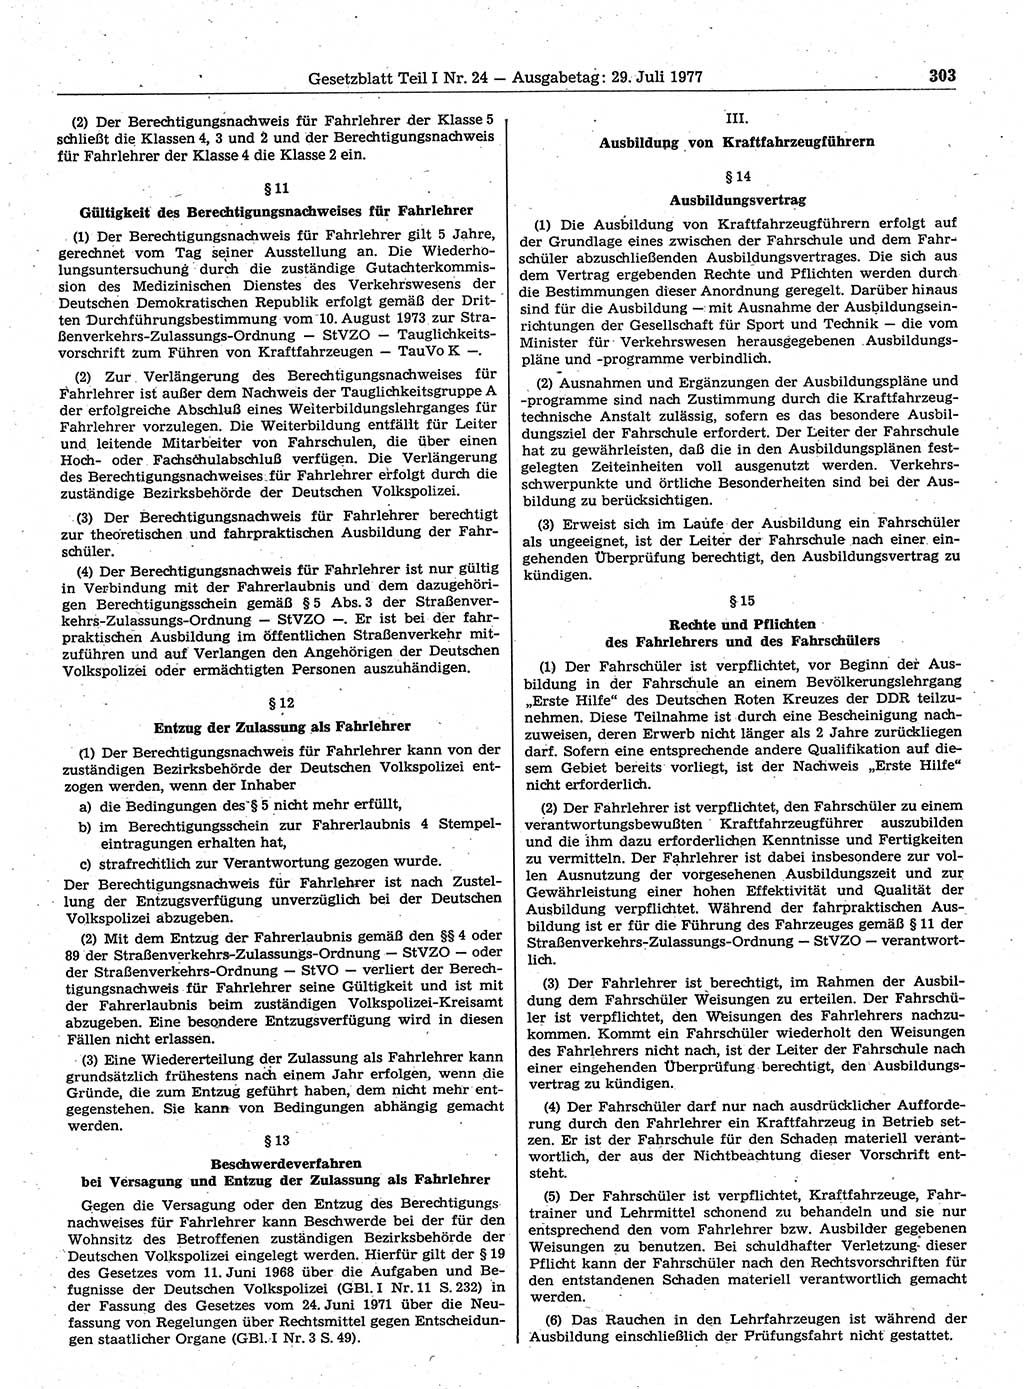 Gesetzblatt (GBl.) der Deutschen Demokratischen Republik (DDR) Teil Ⅰ 1977, Seite 303 (GBl. DDR Ⅰ 1977, S. 303)